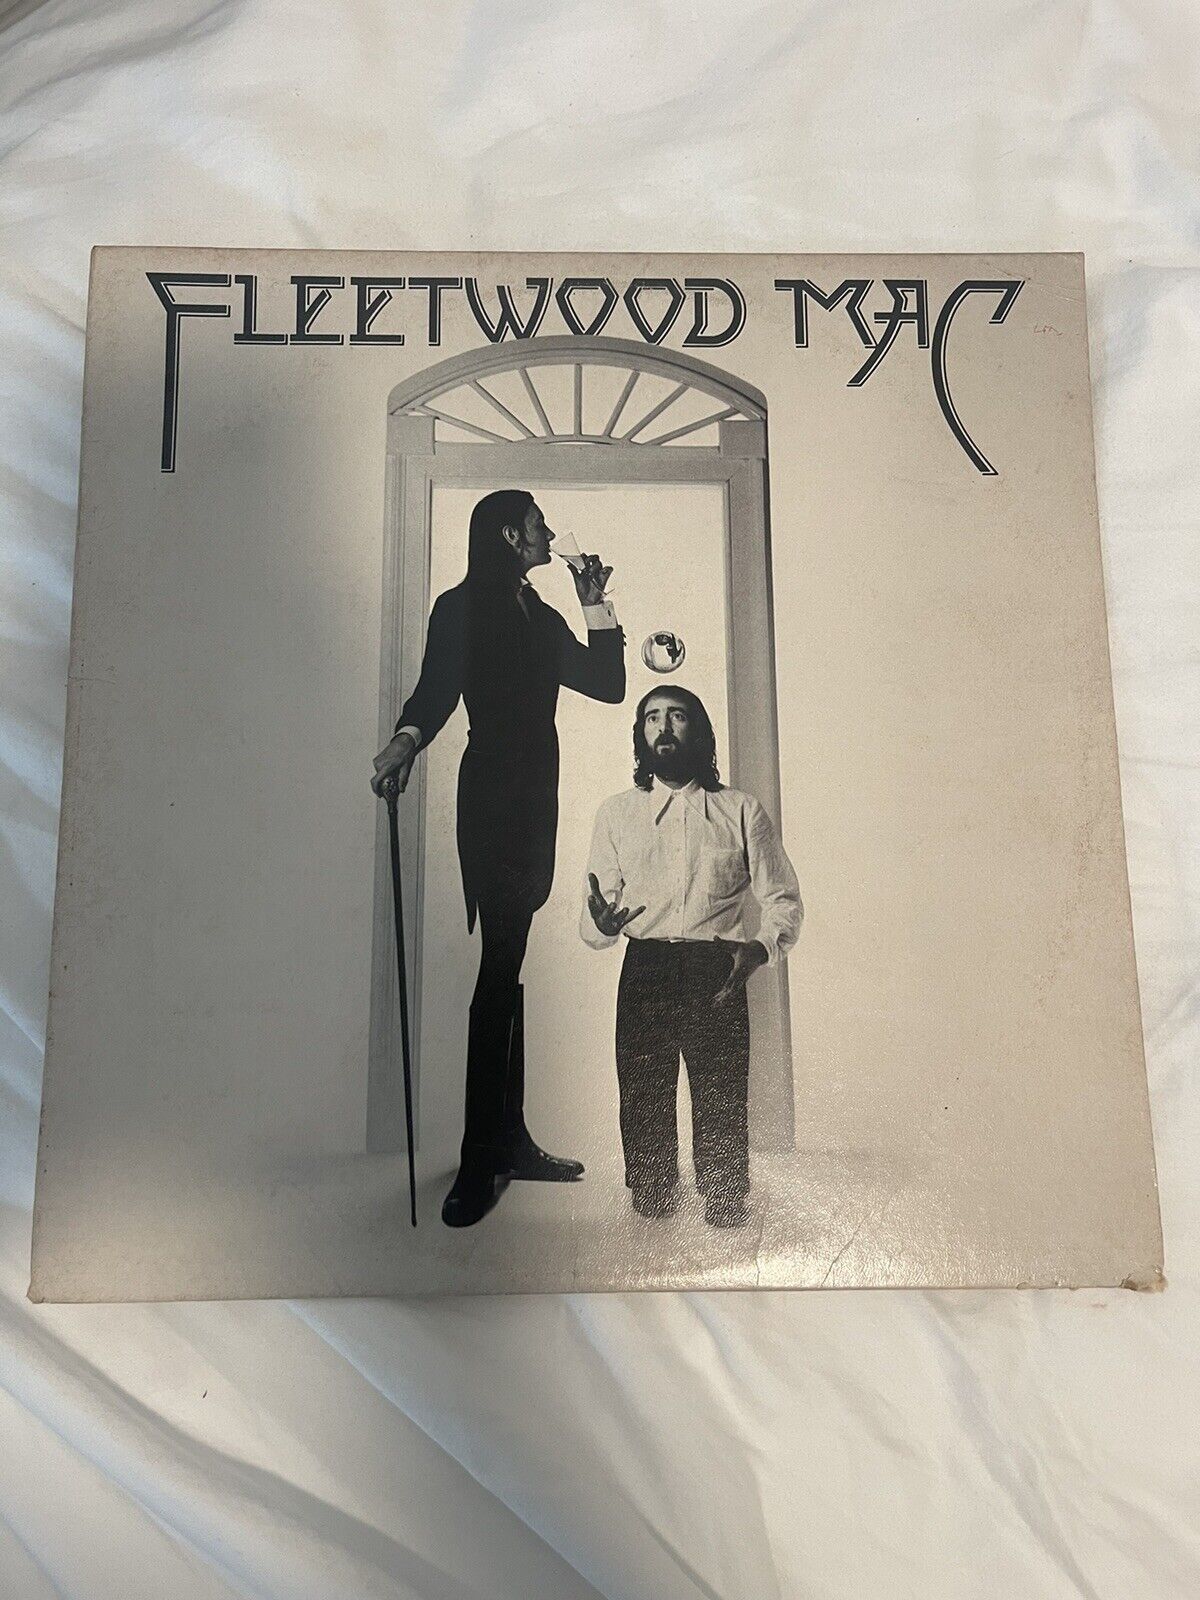 Fleetwood Mac ‎’ Fleetwood Mac ‘ Vinyl LP US 1975 MS 2225 Textured VG+/VG